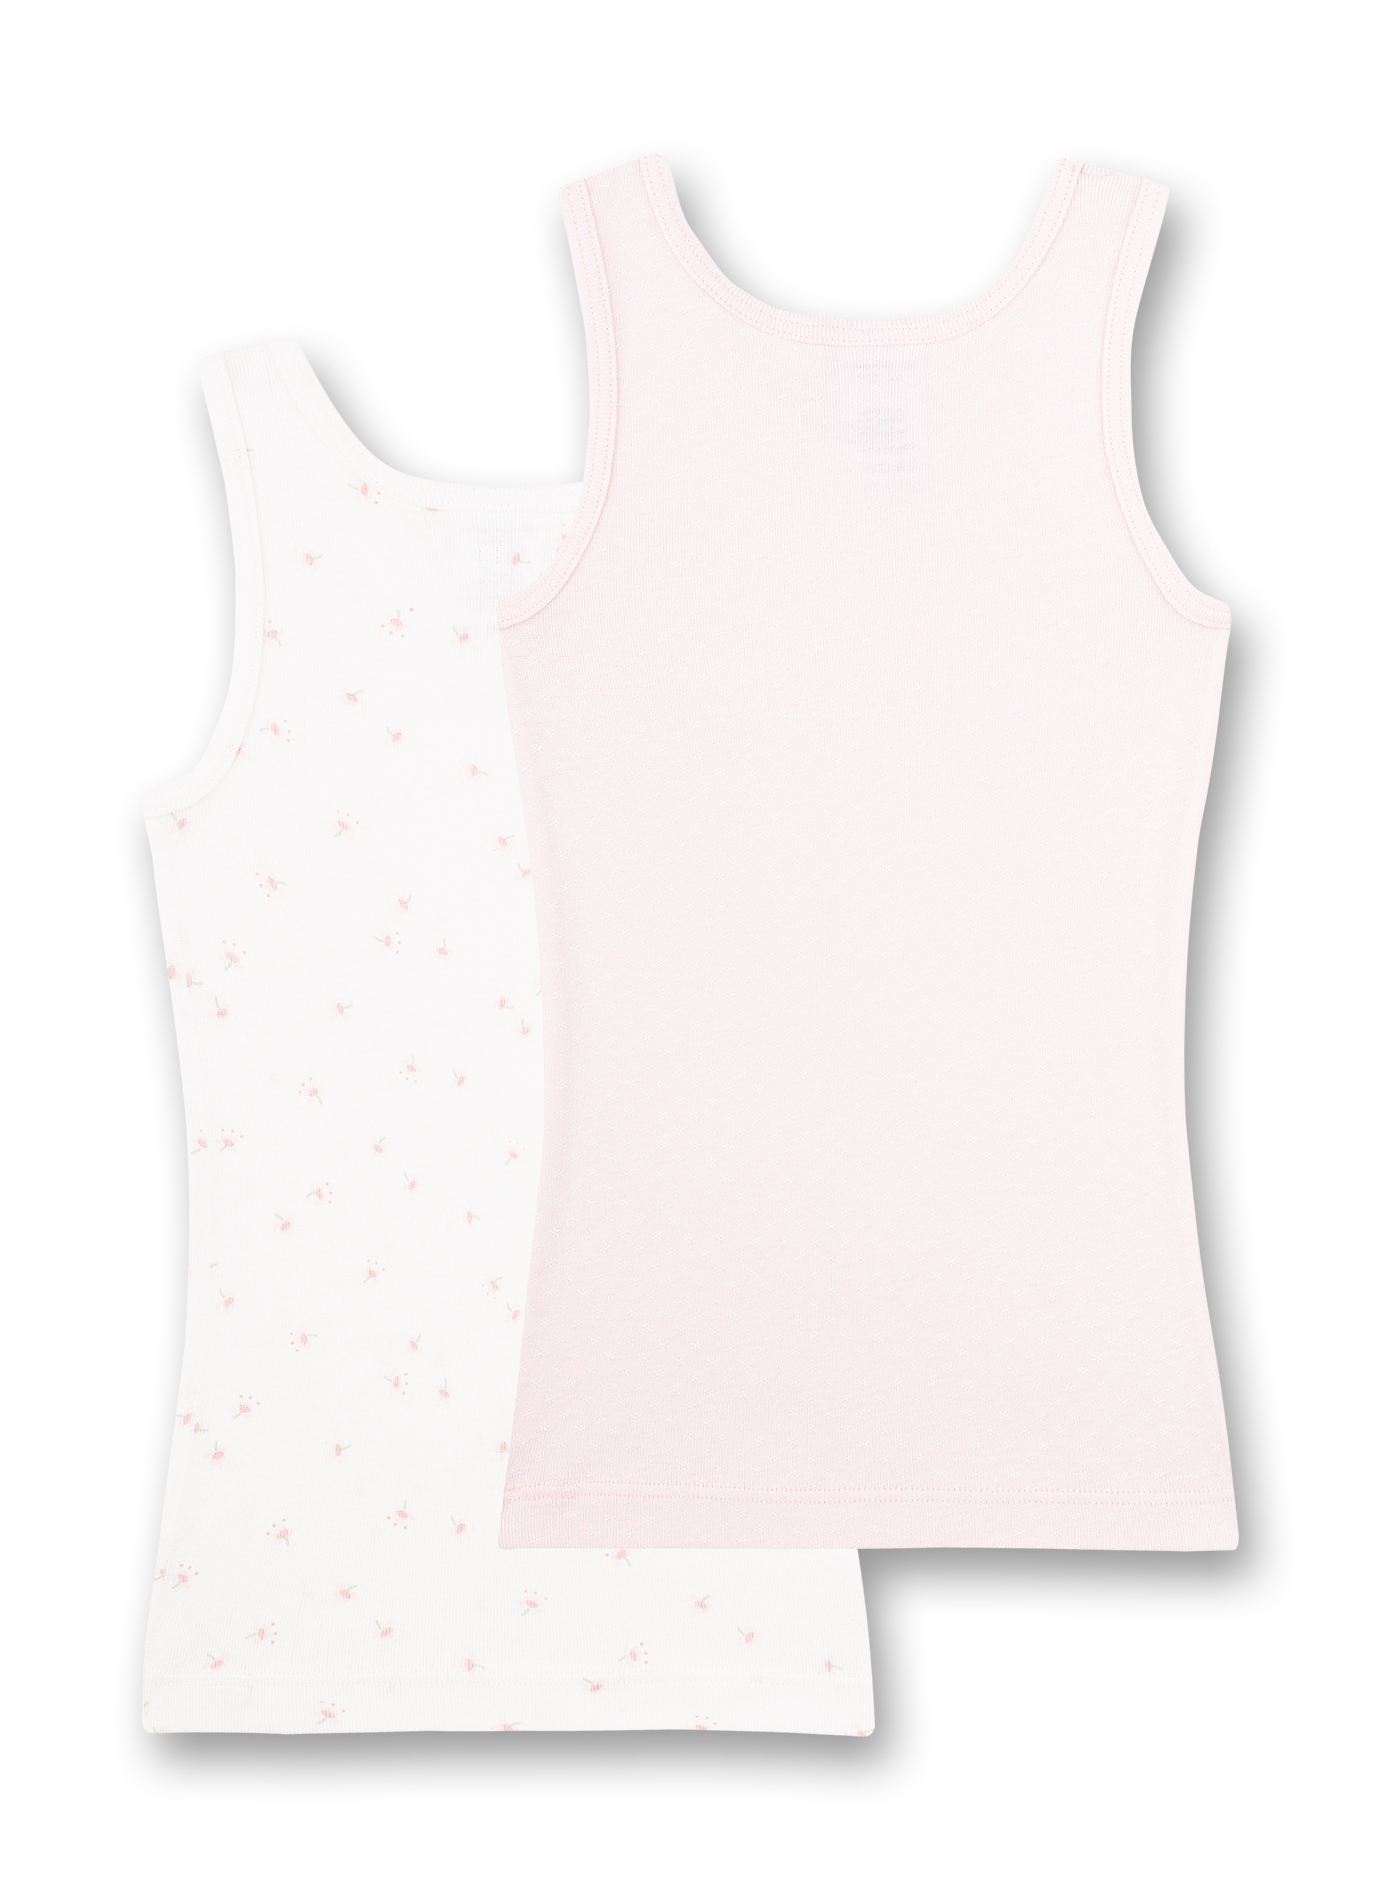 Mädchen-Unterhemd (Doppelpack) Rosa und Weiß Flowers and Butterflies